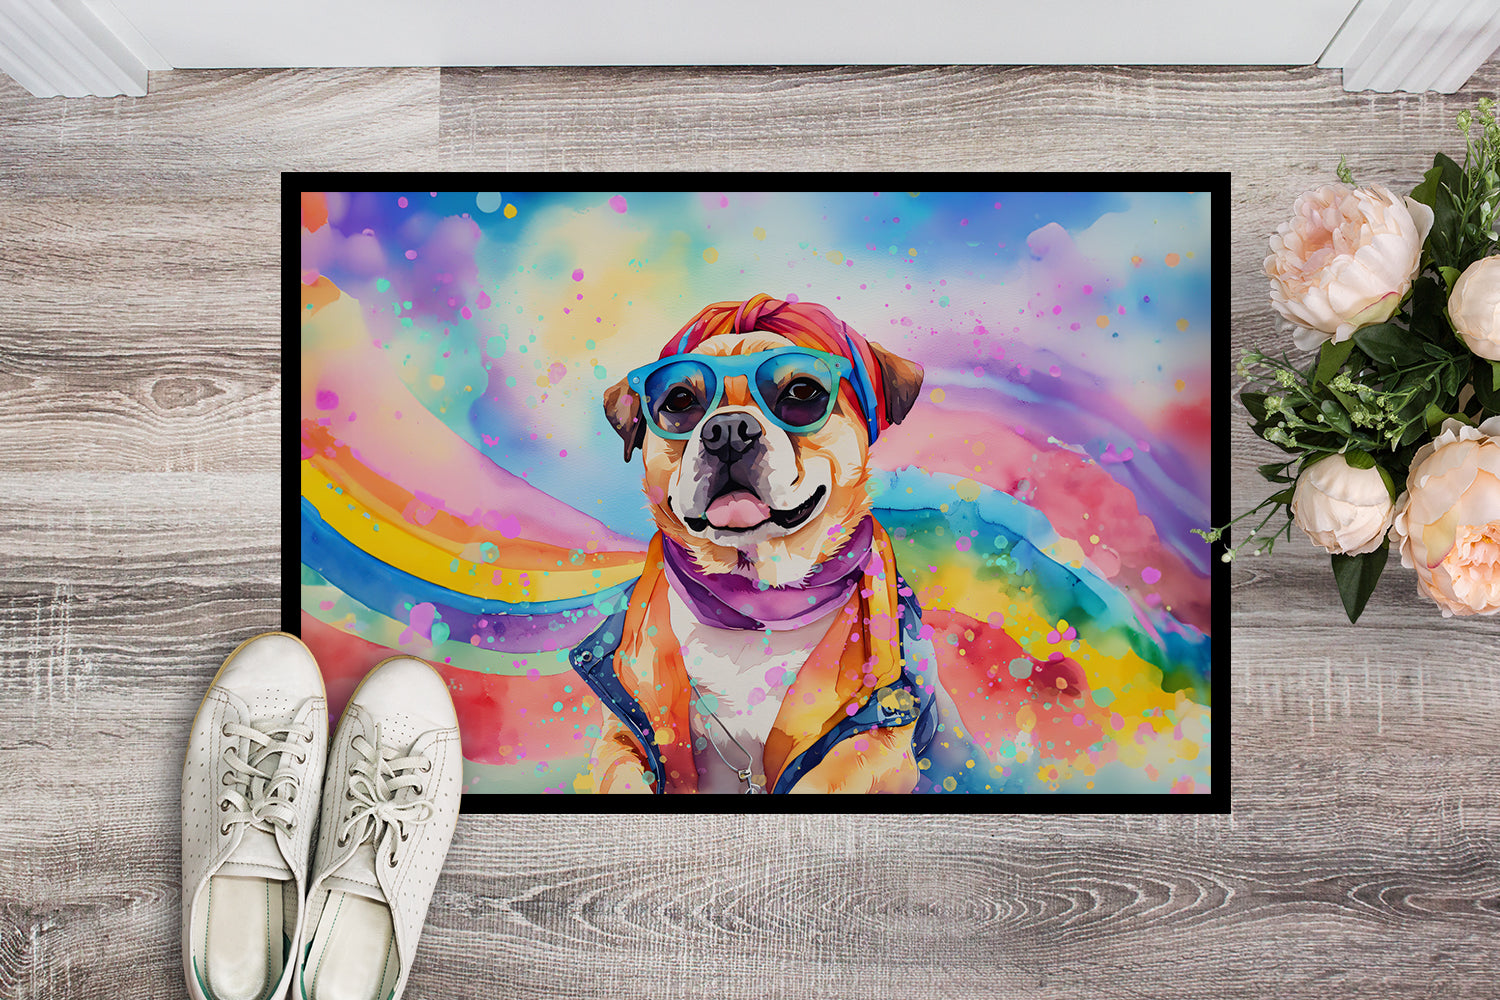 Buy this Pug Hippie Dawg Doormat